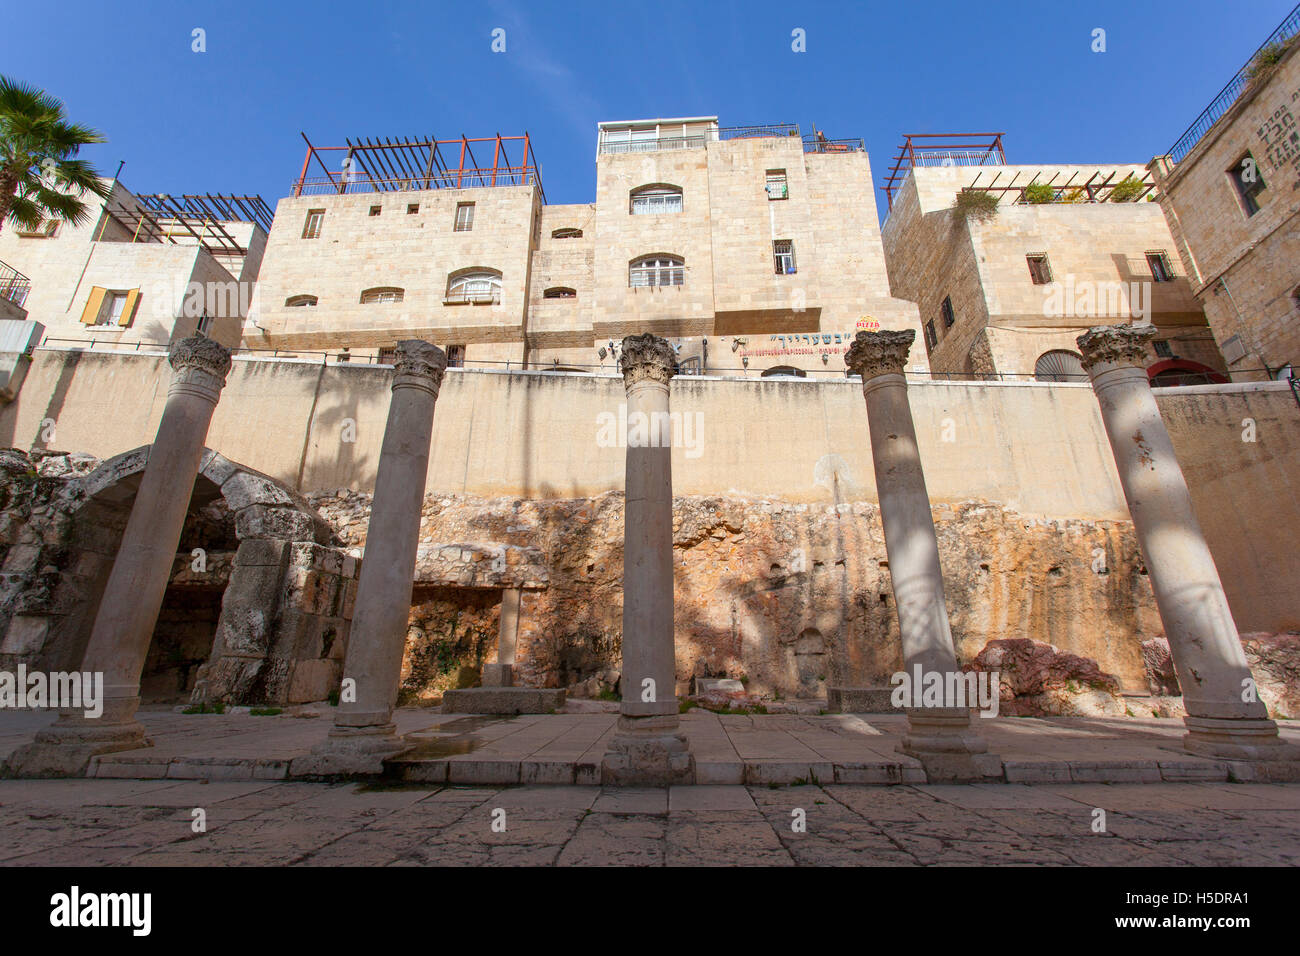 Colonnes romaines dans le "Cardo" trimestre. Vieille ville de Jérusalem, Israël. Banque D'Images